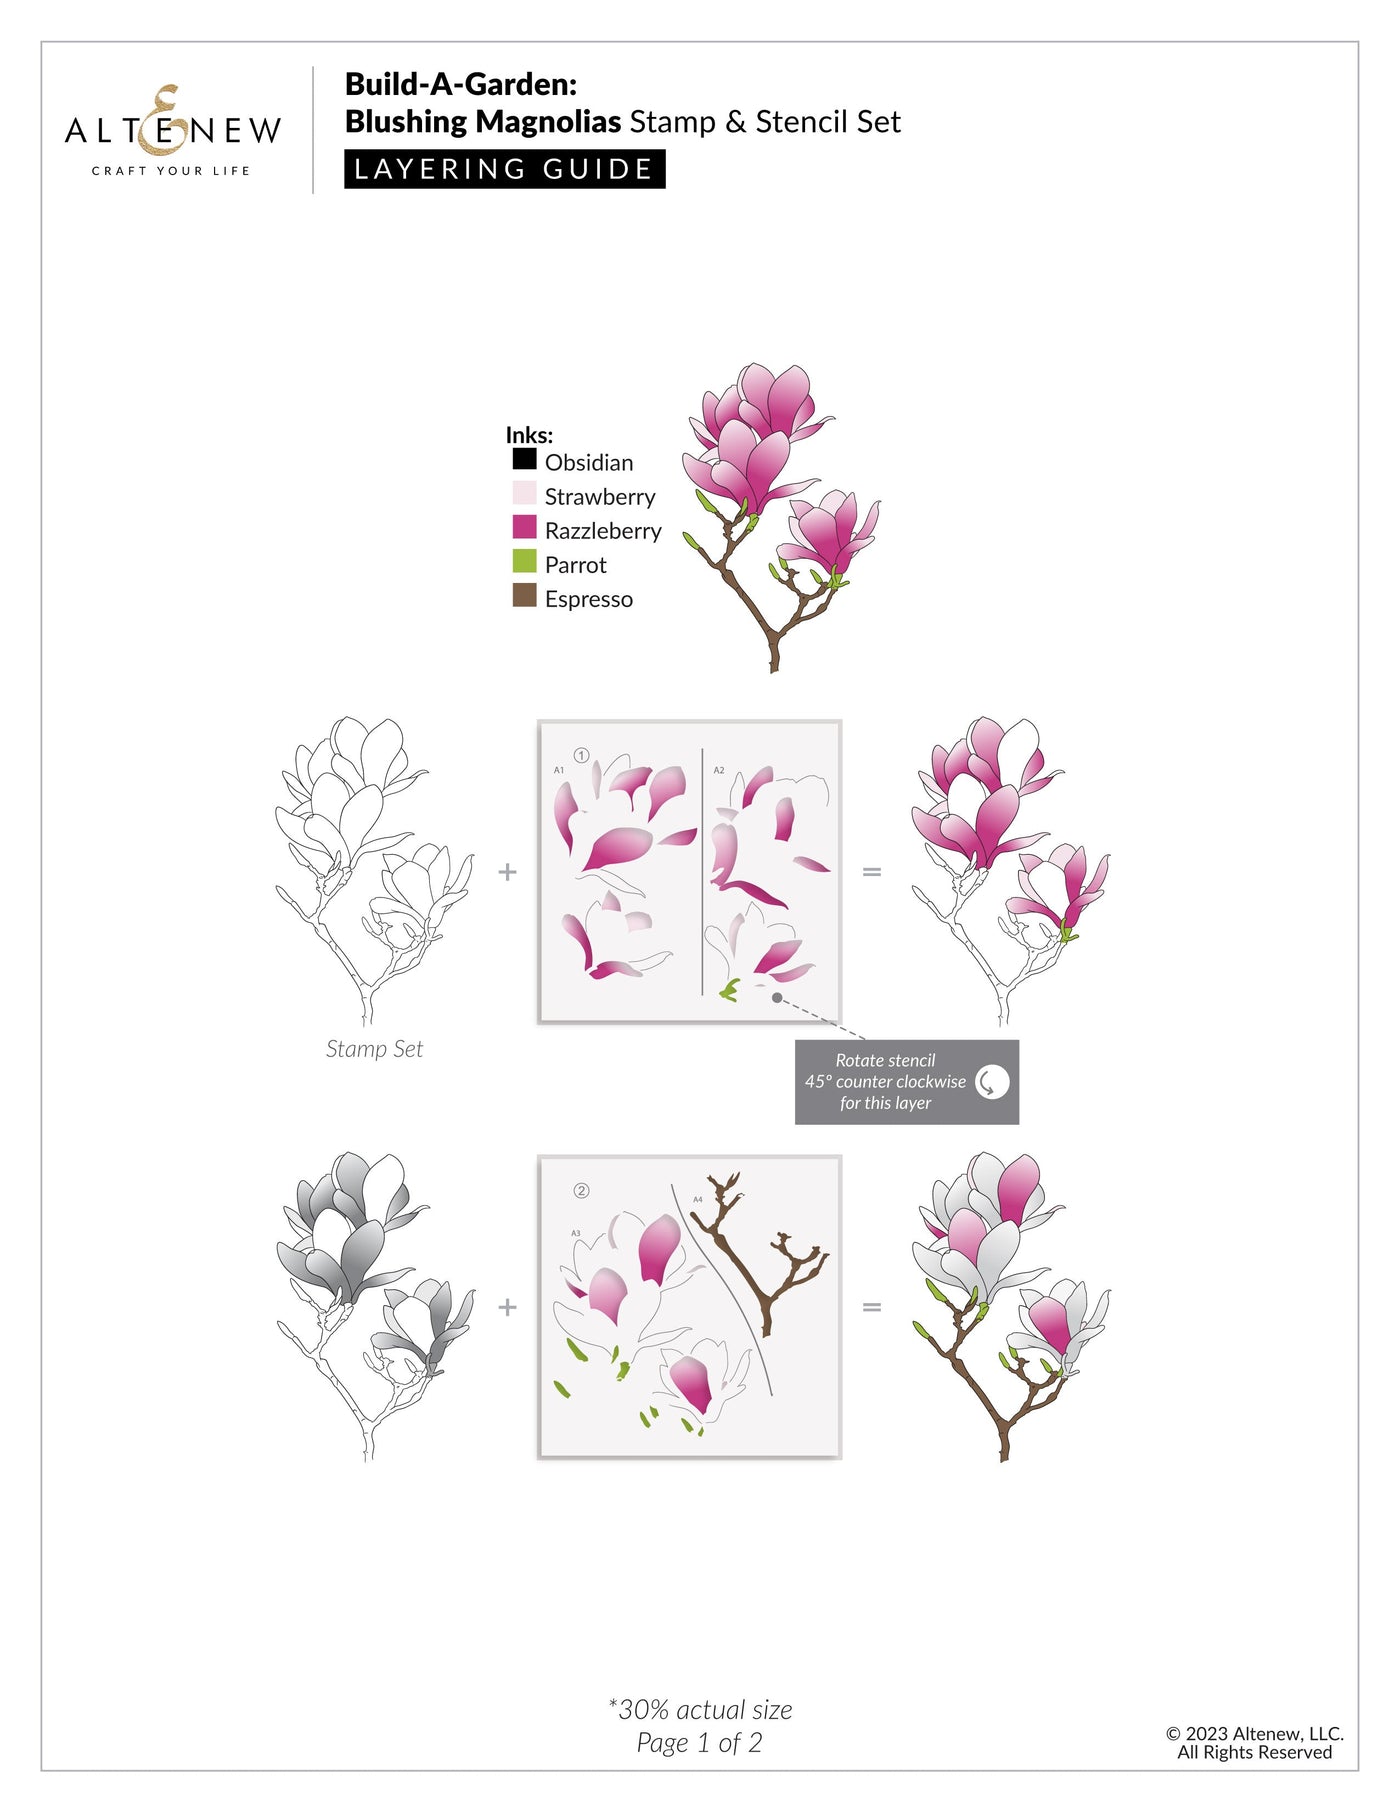 Build-A-Garden Set Build-A-Garden: Blushing Magnolias